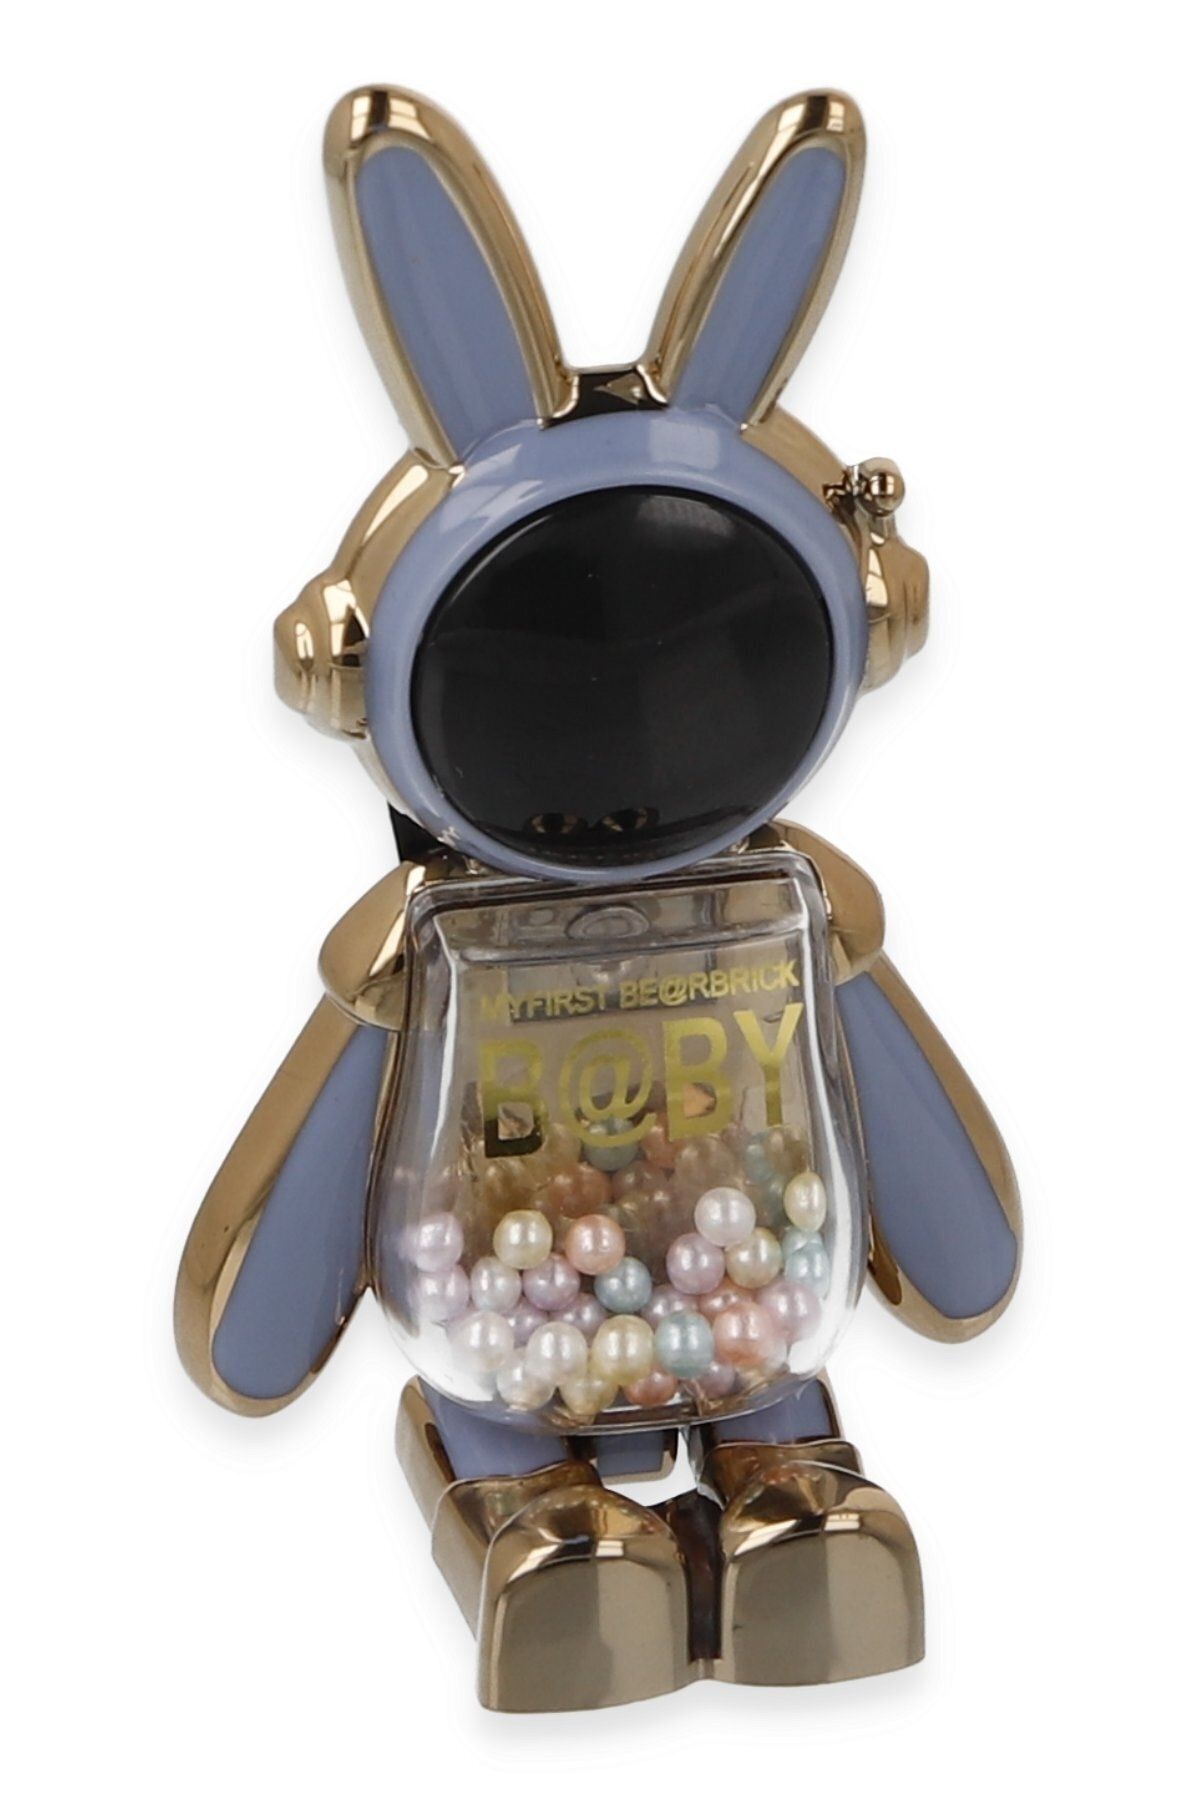 TEKNETSTORE Masa Üstü Sevimli Tavşan Standı Telefon Tutucu Yapışkan Kılıfa Yapıştırılır Boncuklu Astronot Tutucu